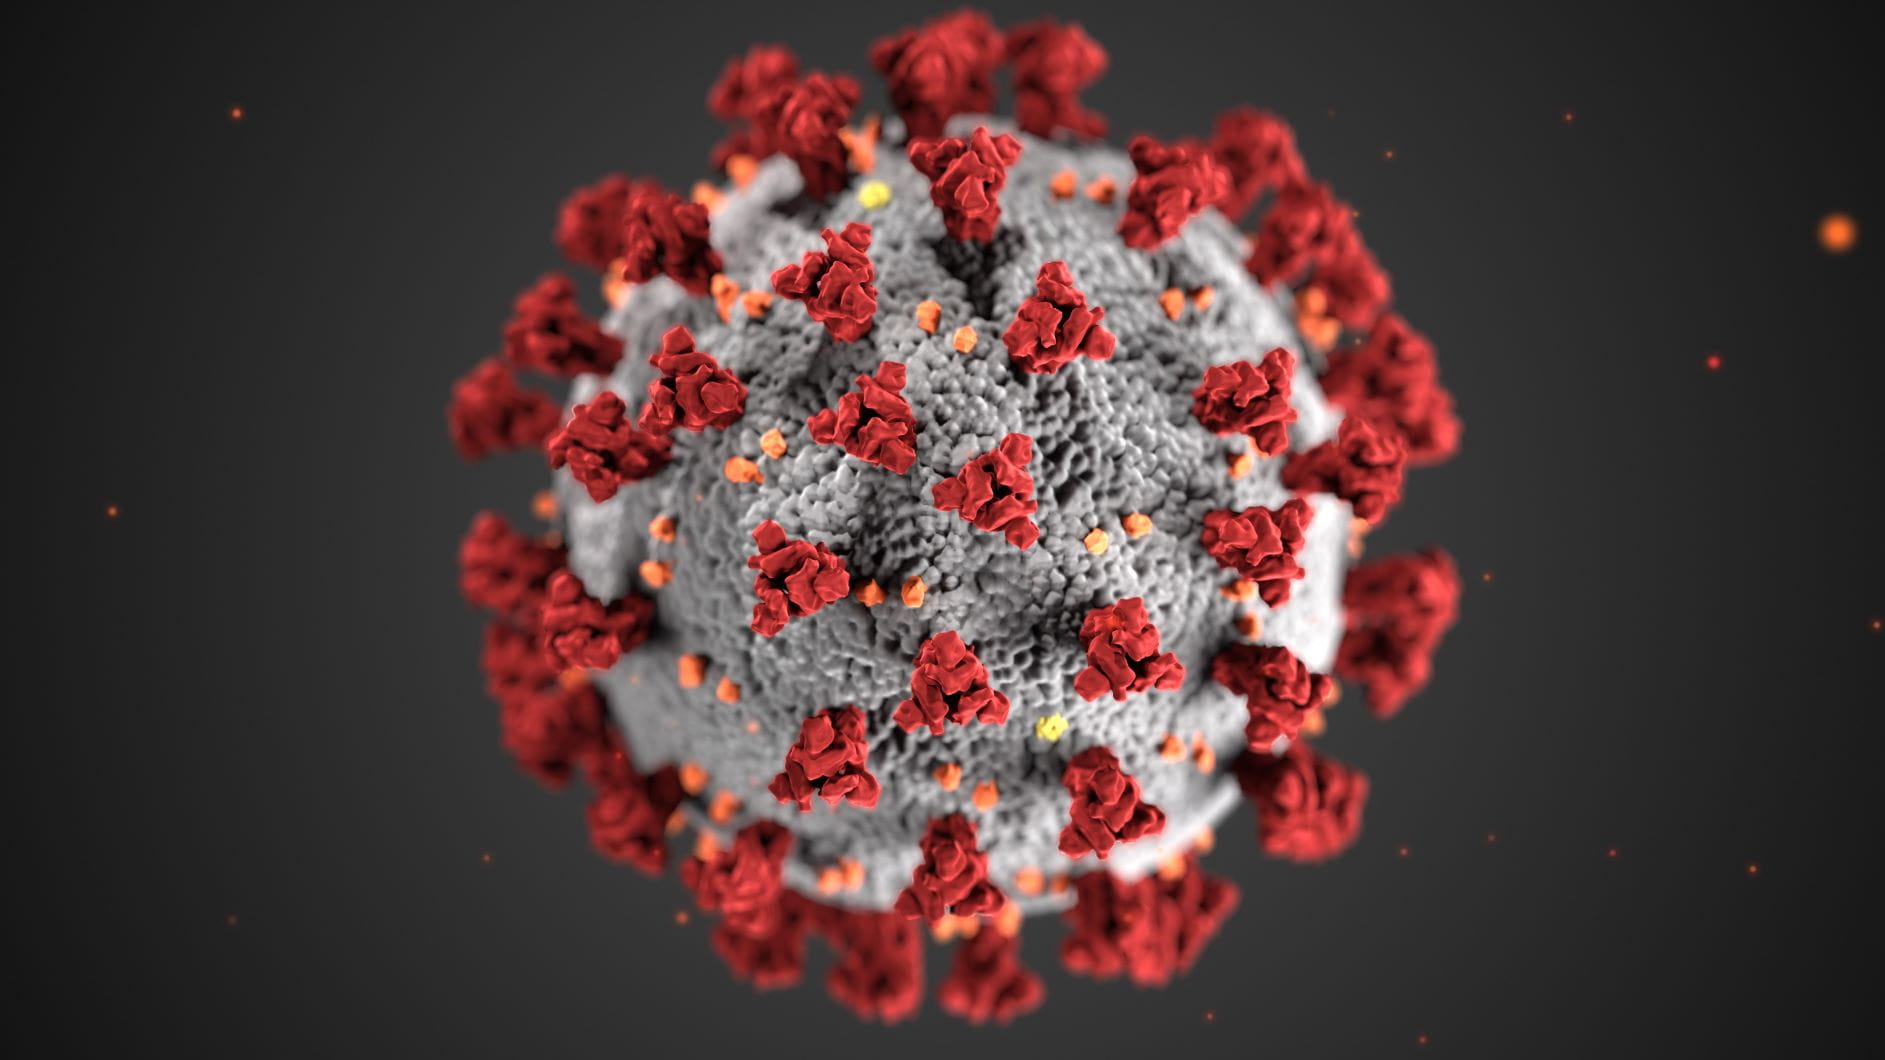 Coronavirus particle